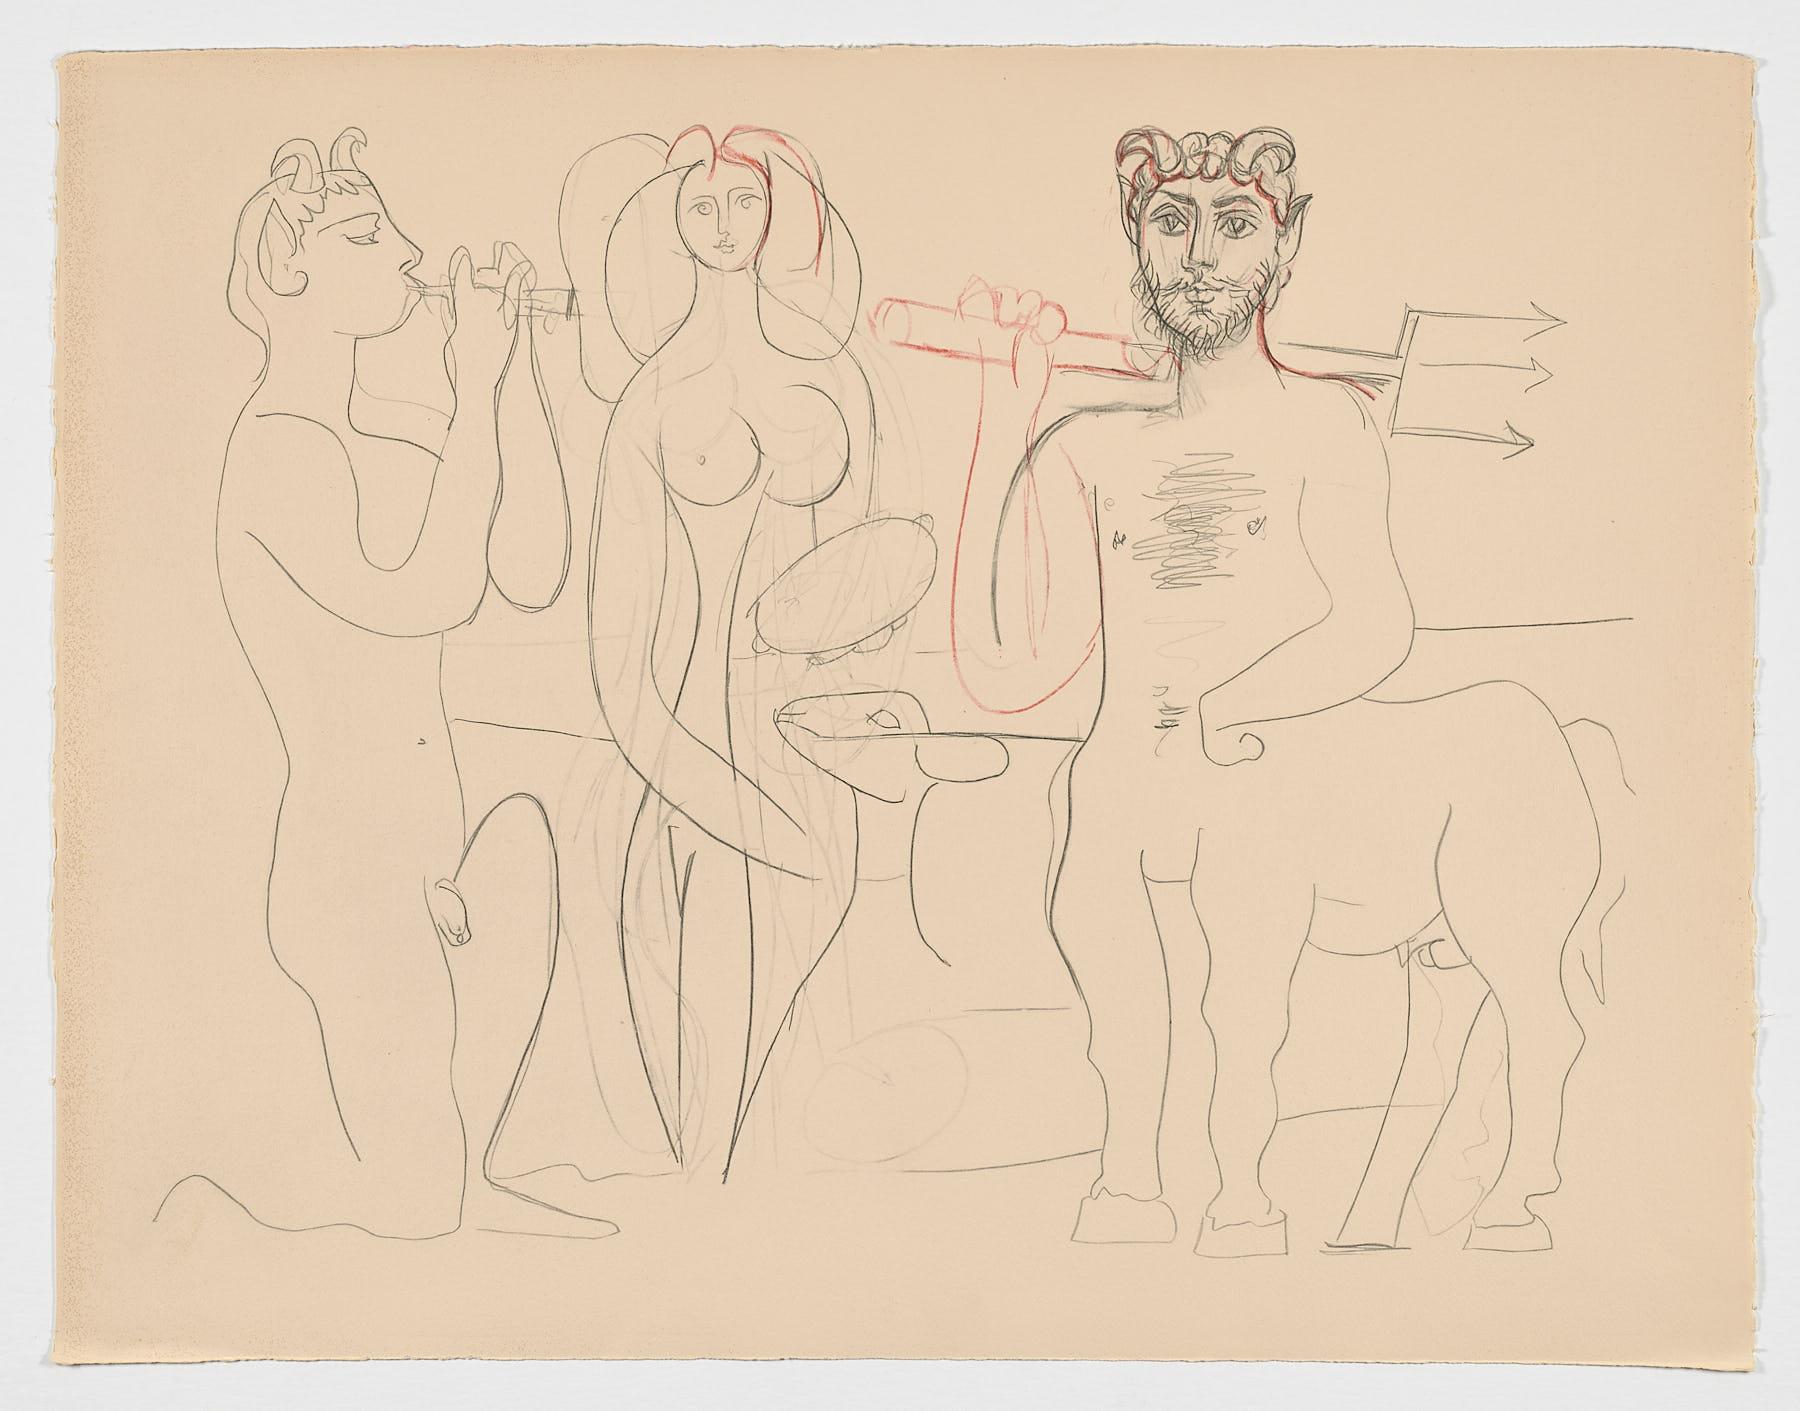 Spanischer Original-Kunstdruck n15 von Pablo Ruiz Picasso, Spanisch, 1958, limitierte Auflage – Print von Pablo Picasso